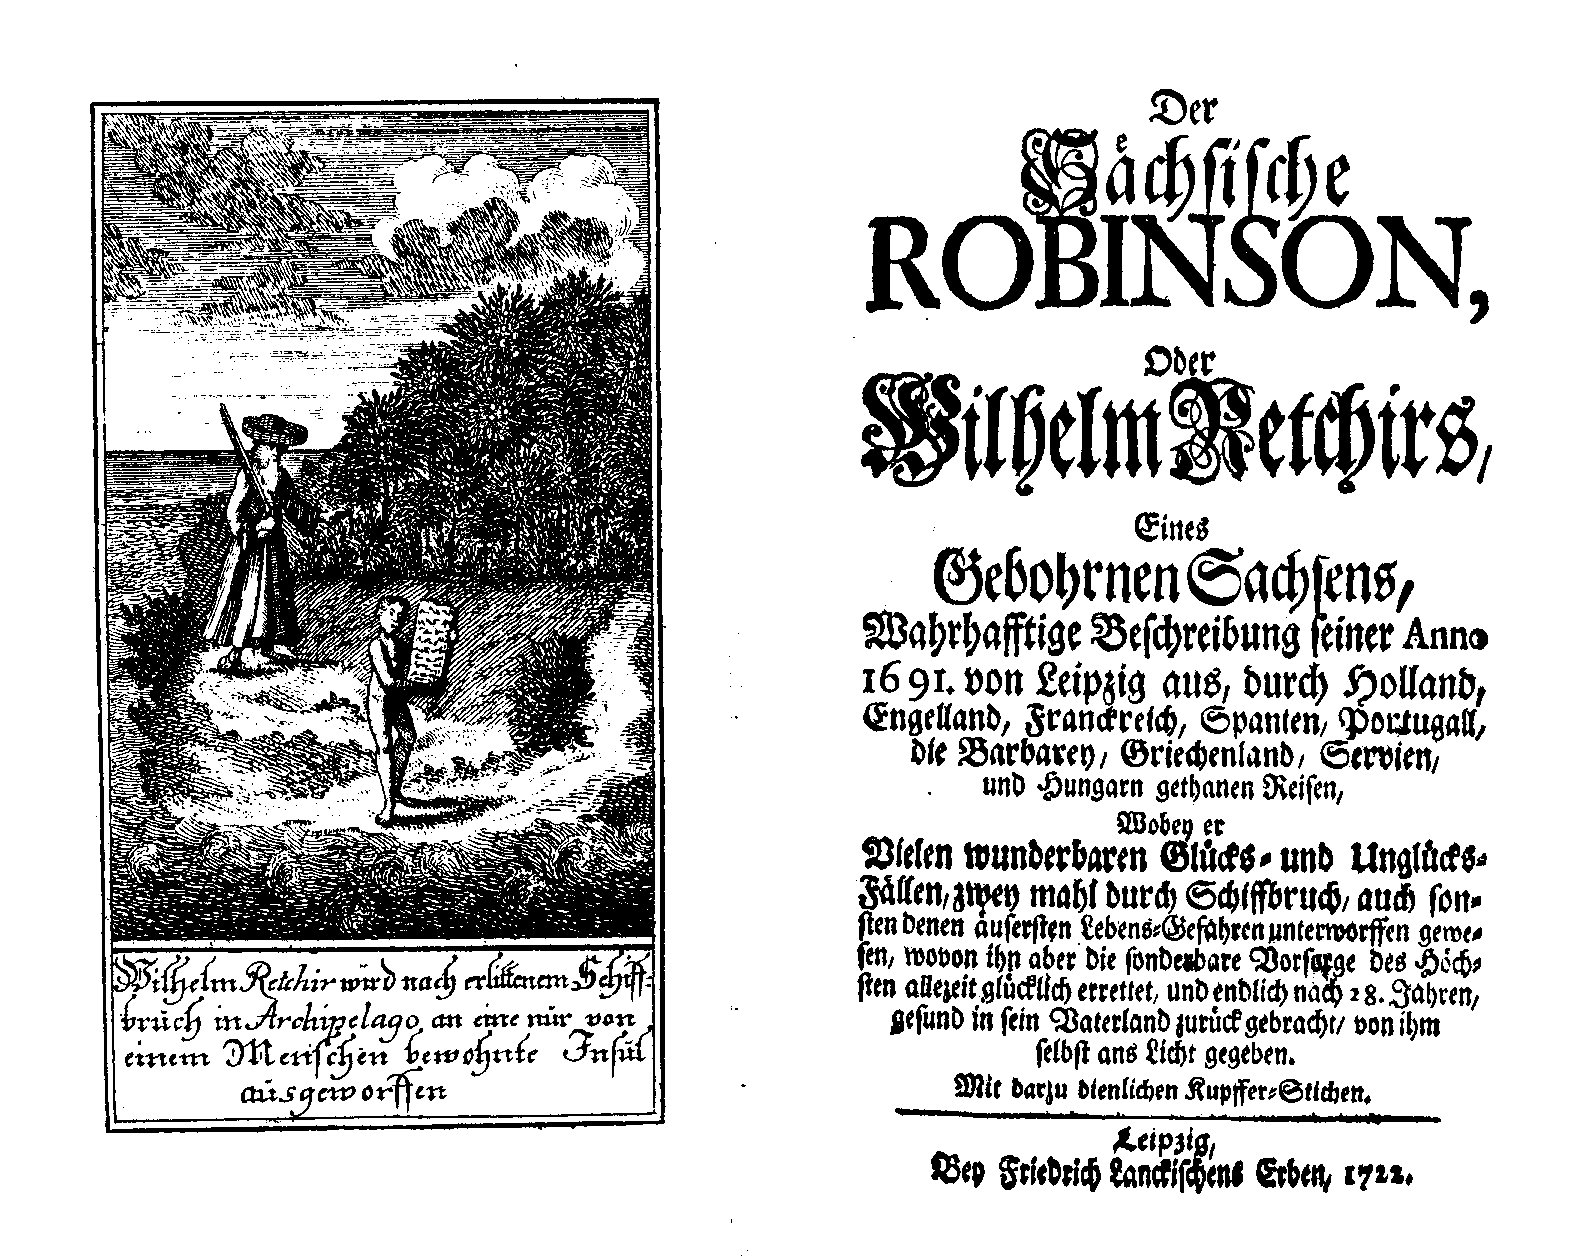 Wilhelm Retchir [pseud.], Der sächsische Robinson (Leipzig, Fr. Lanckischens Erben, 1722)